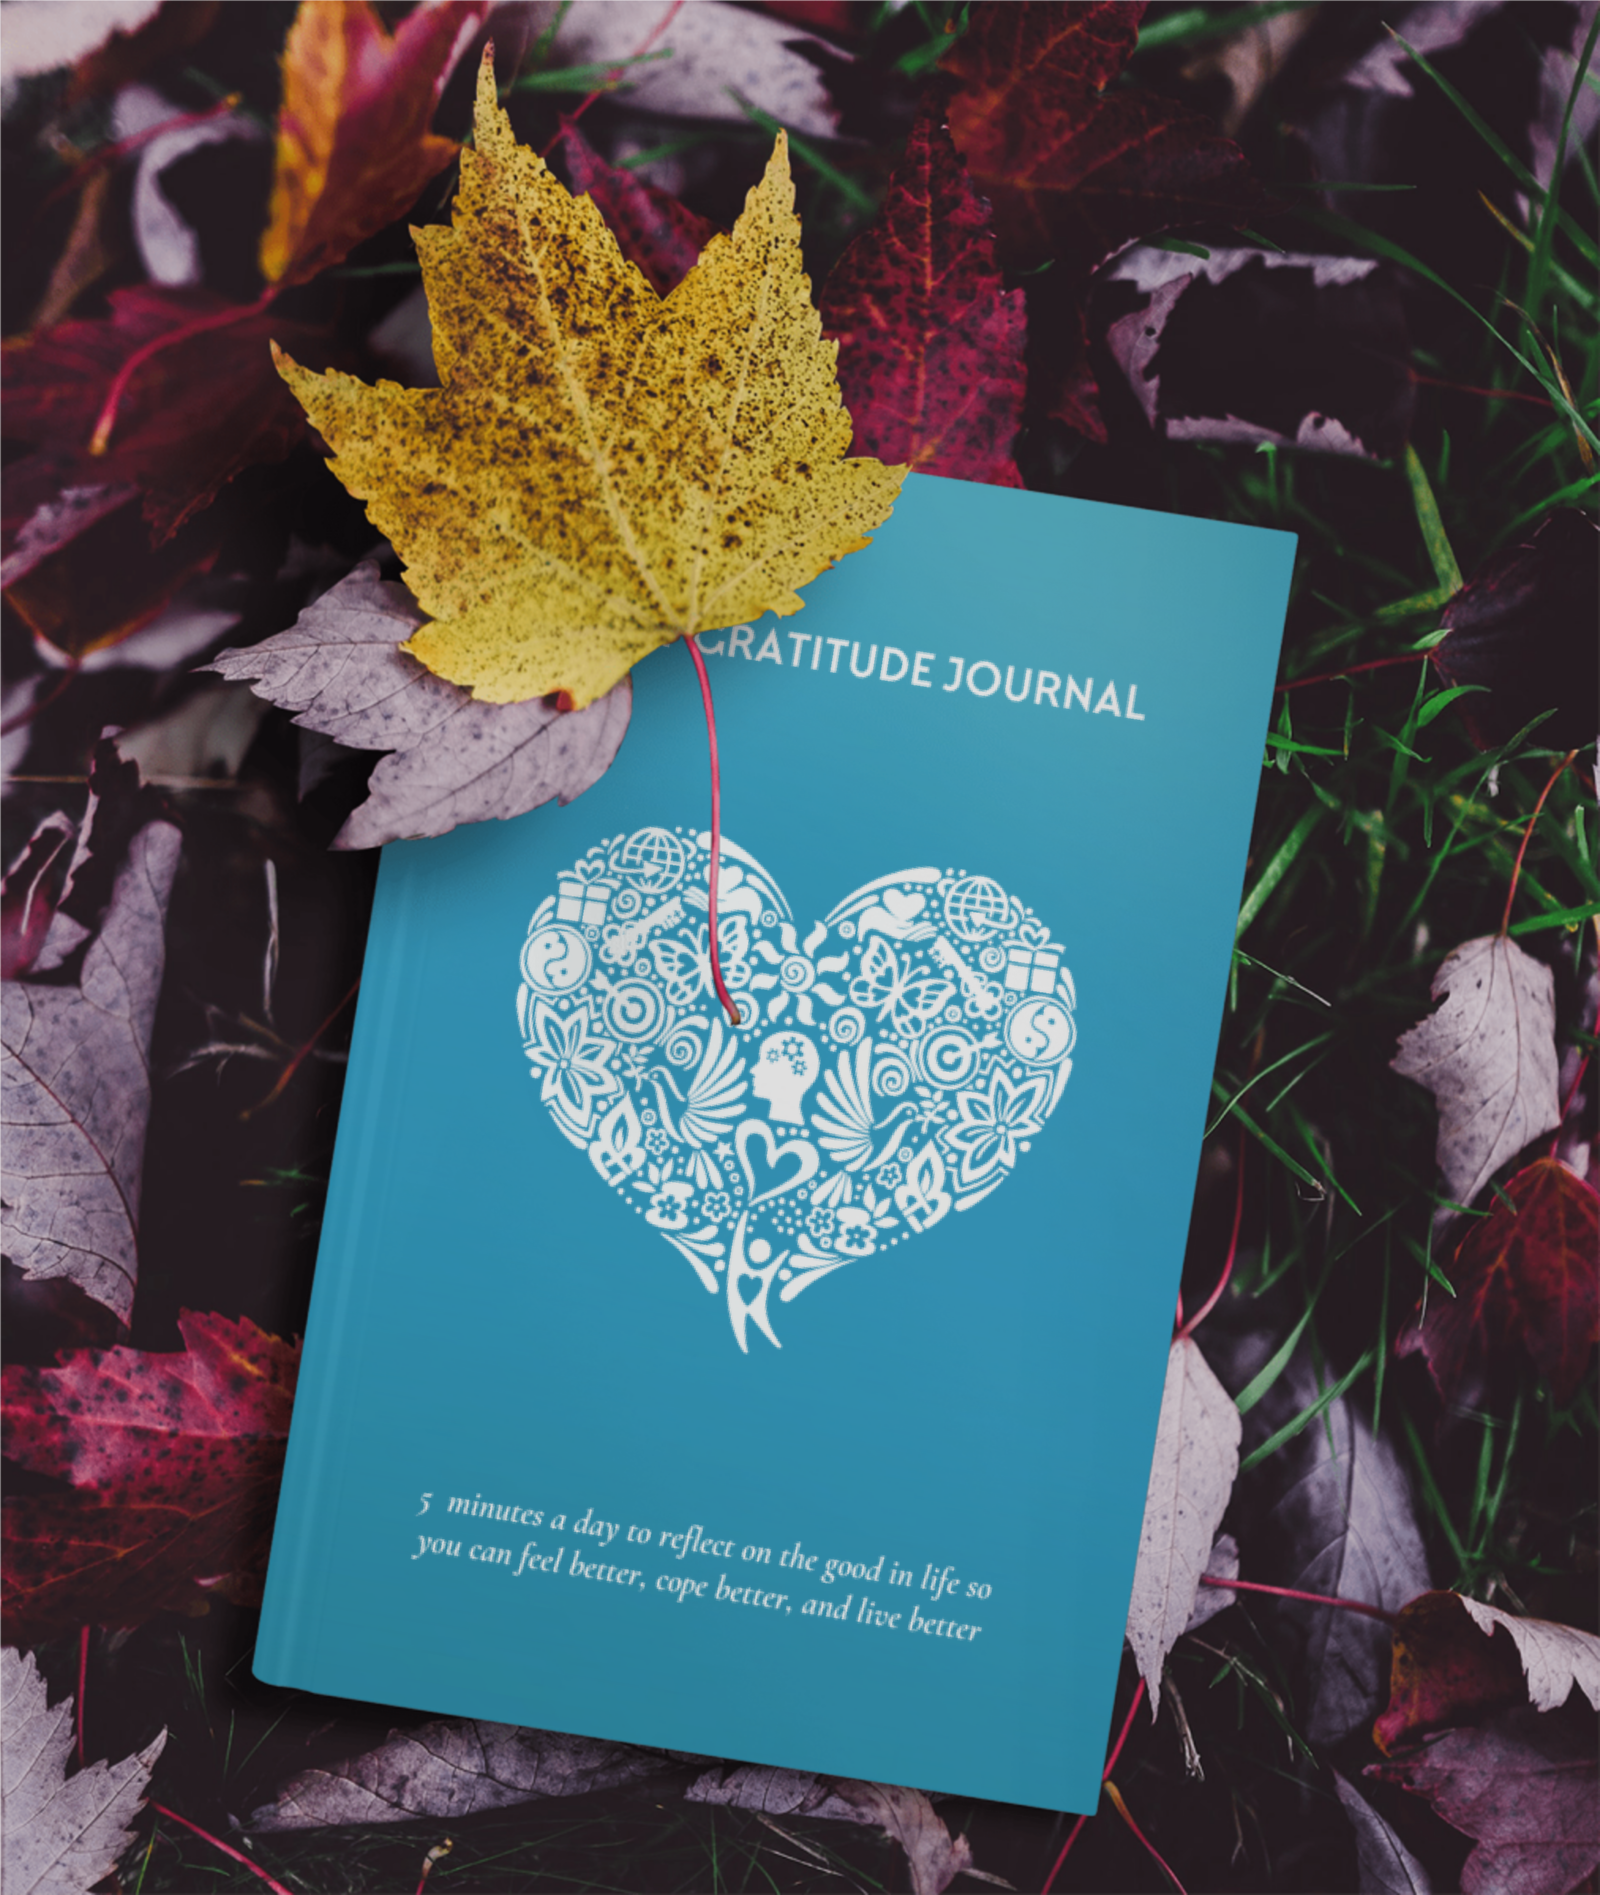 Gratitude Journal on leaves